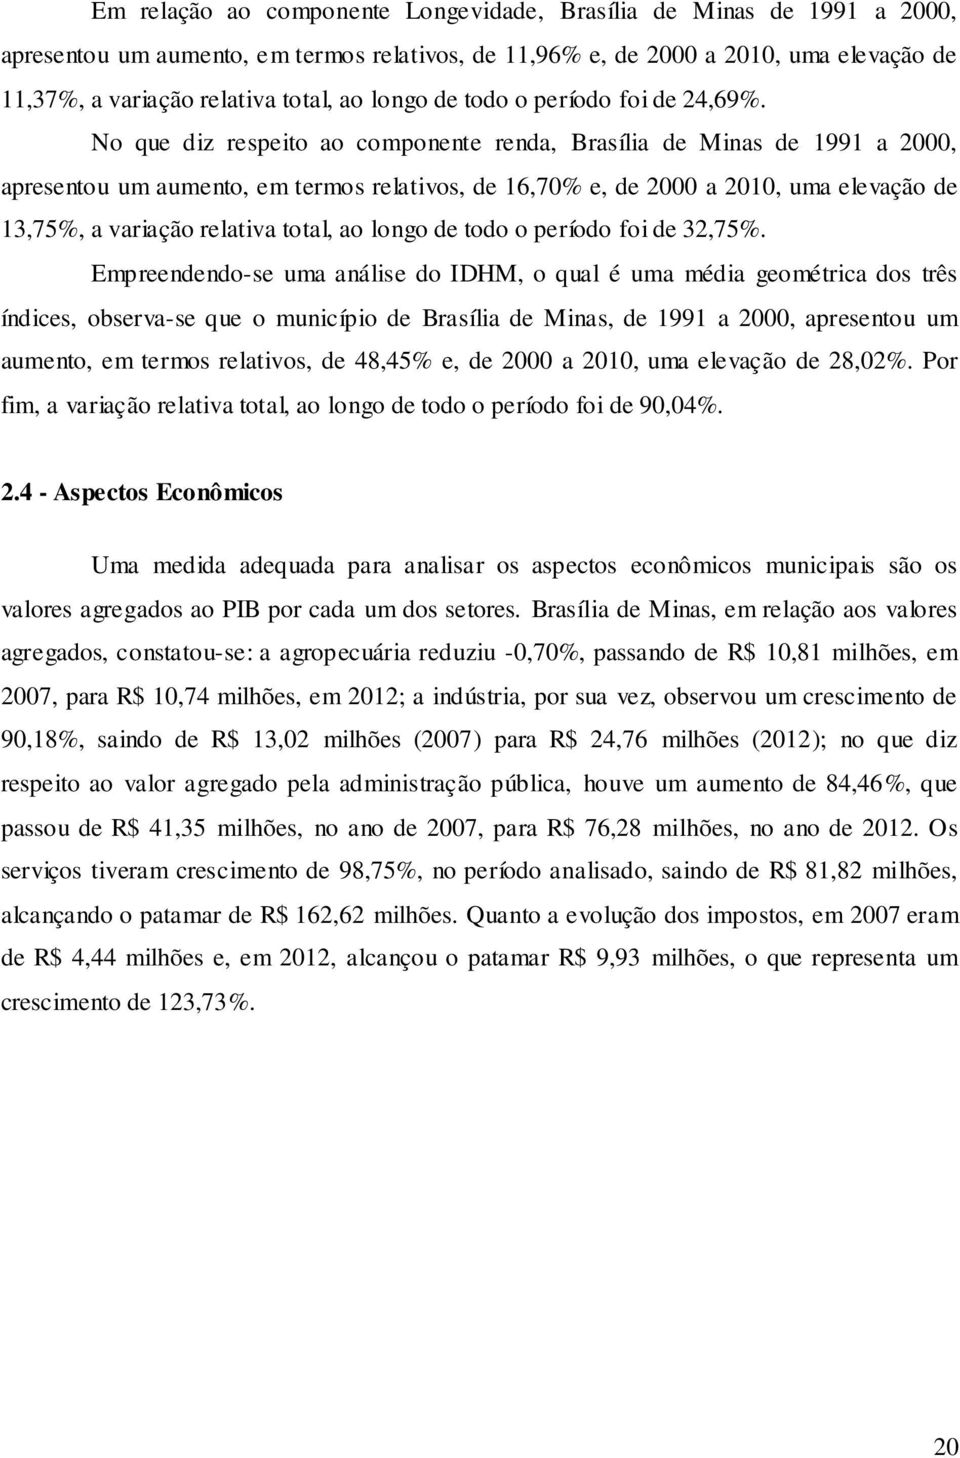 No que diz respeito ao componente renda, Brasília de Minas de 1991 a 2000, apresentou um aumento, em termos relativos, de 16,70% e, de 2000 a 2010, uma elevação de 13,75%, a variação relativa total,